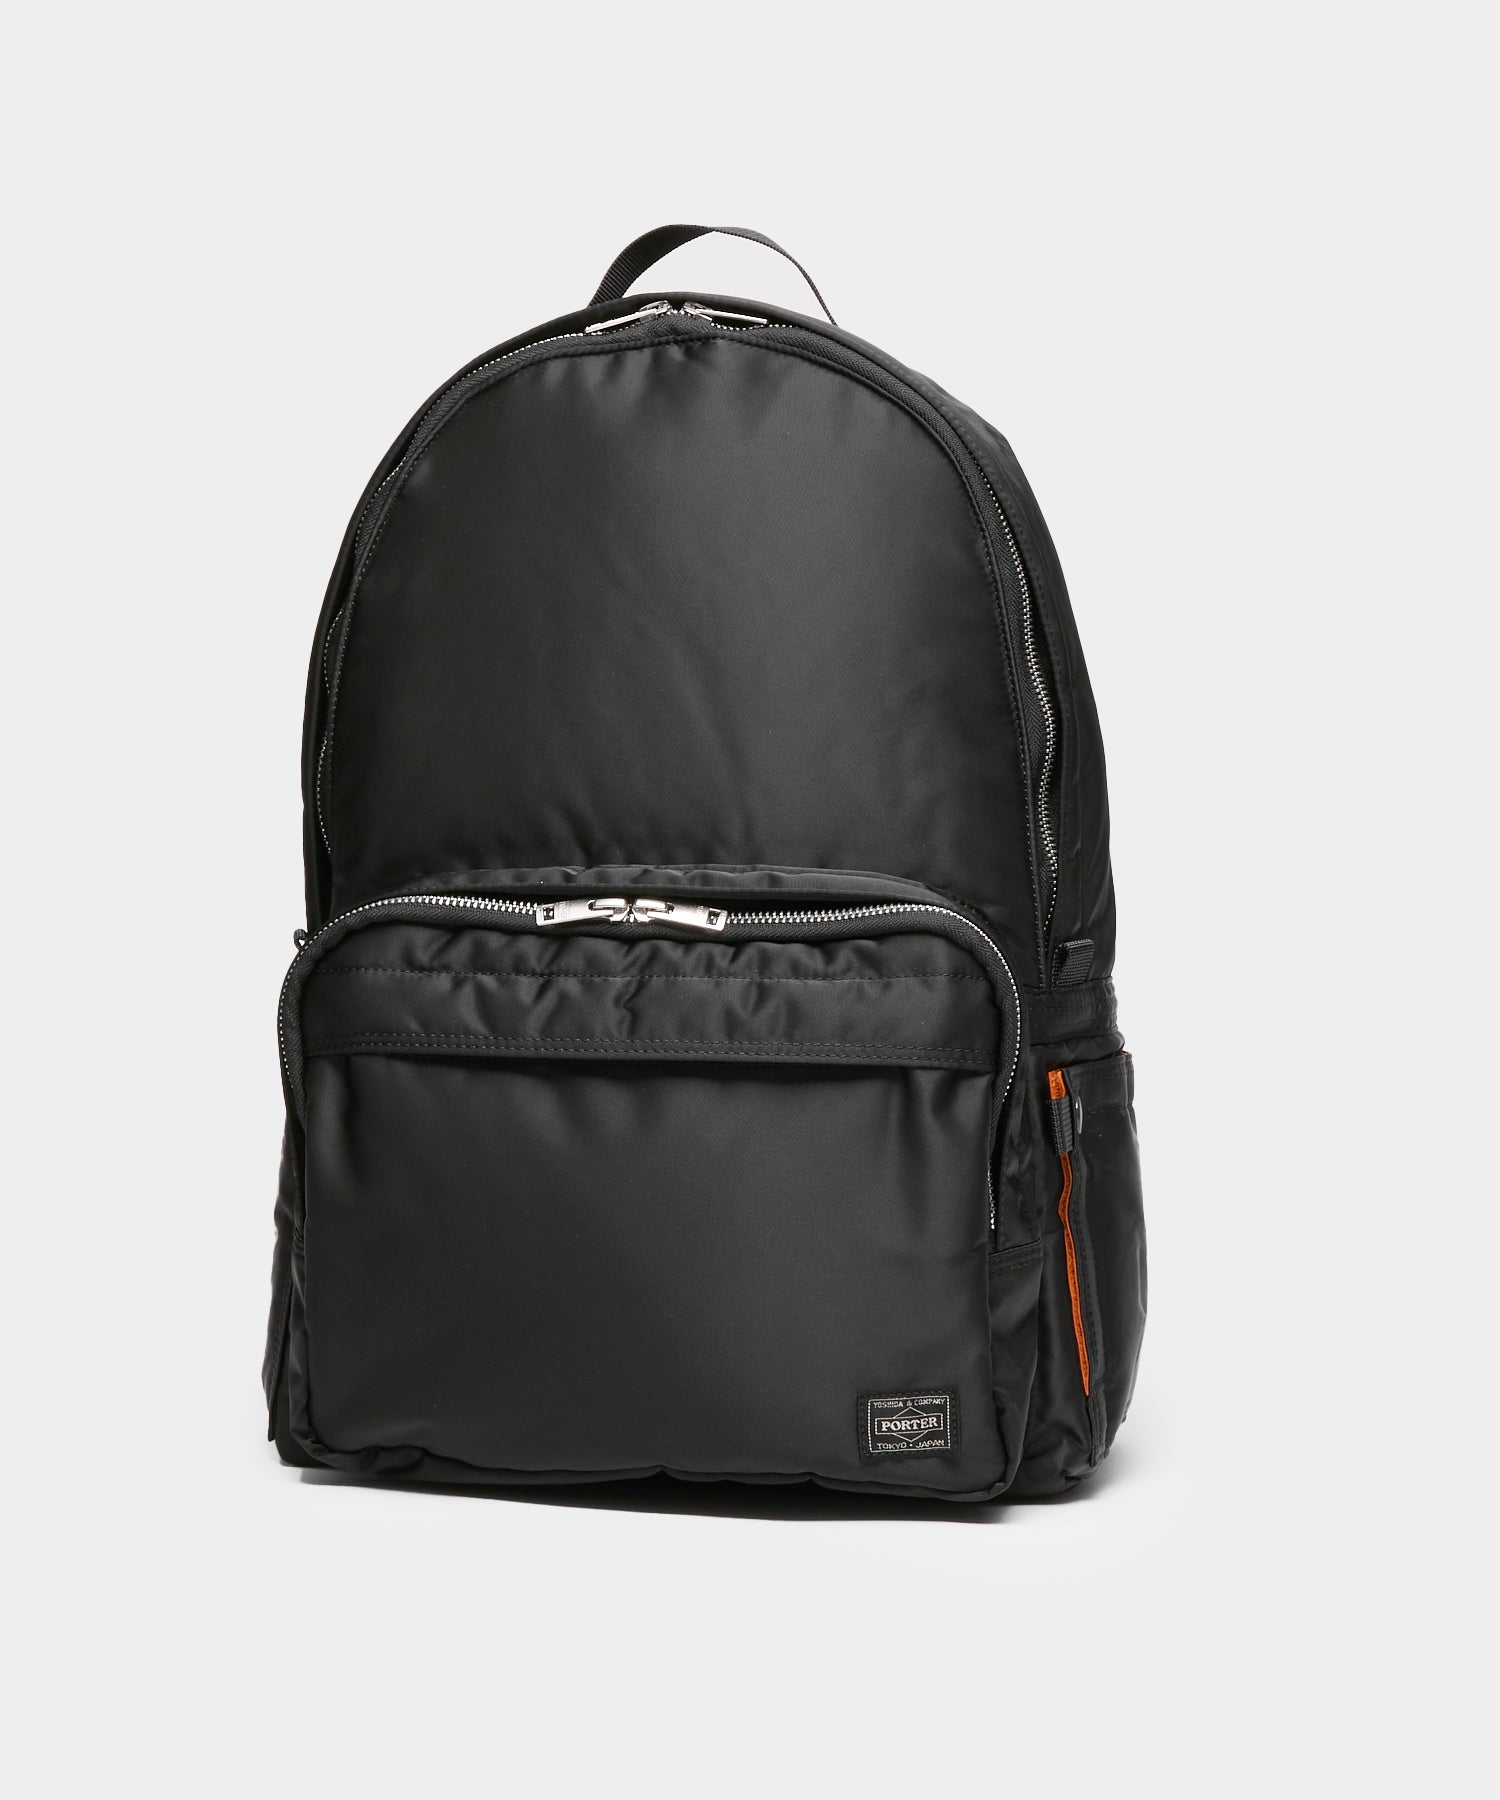 Porter Yoshida & Co. Tanker Backpack in Black